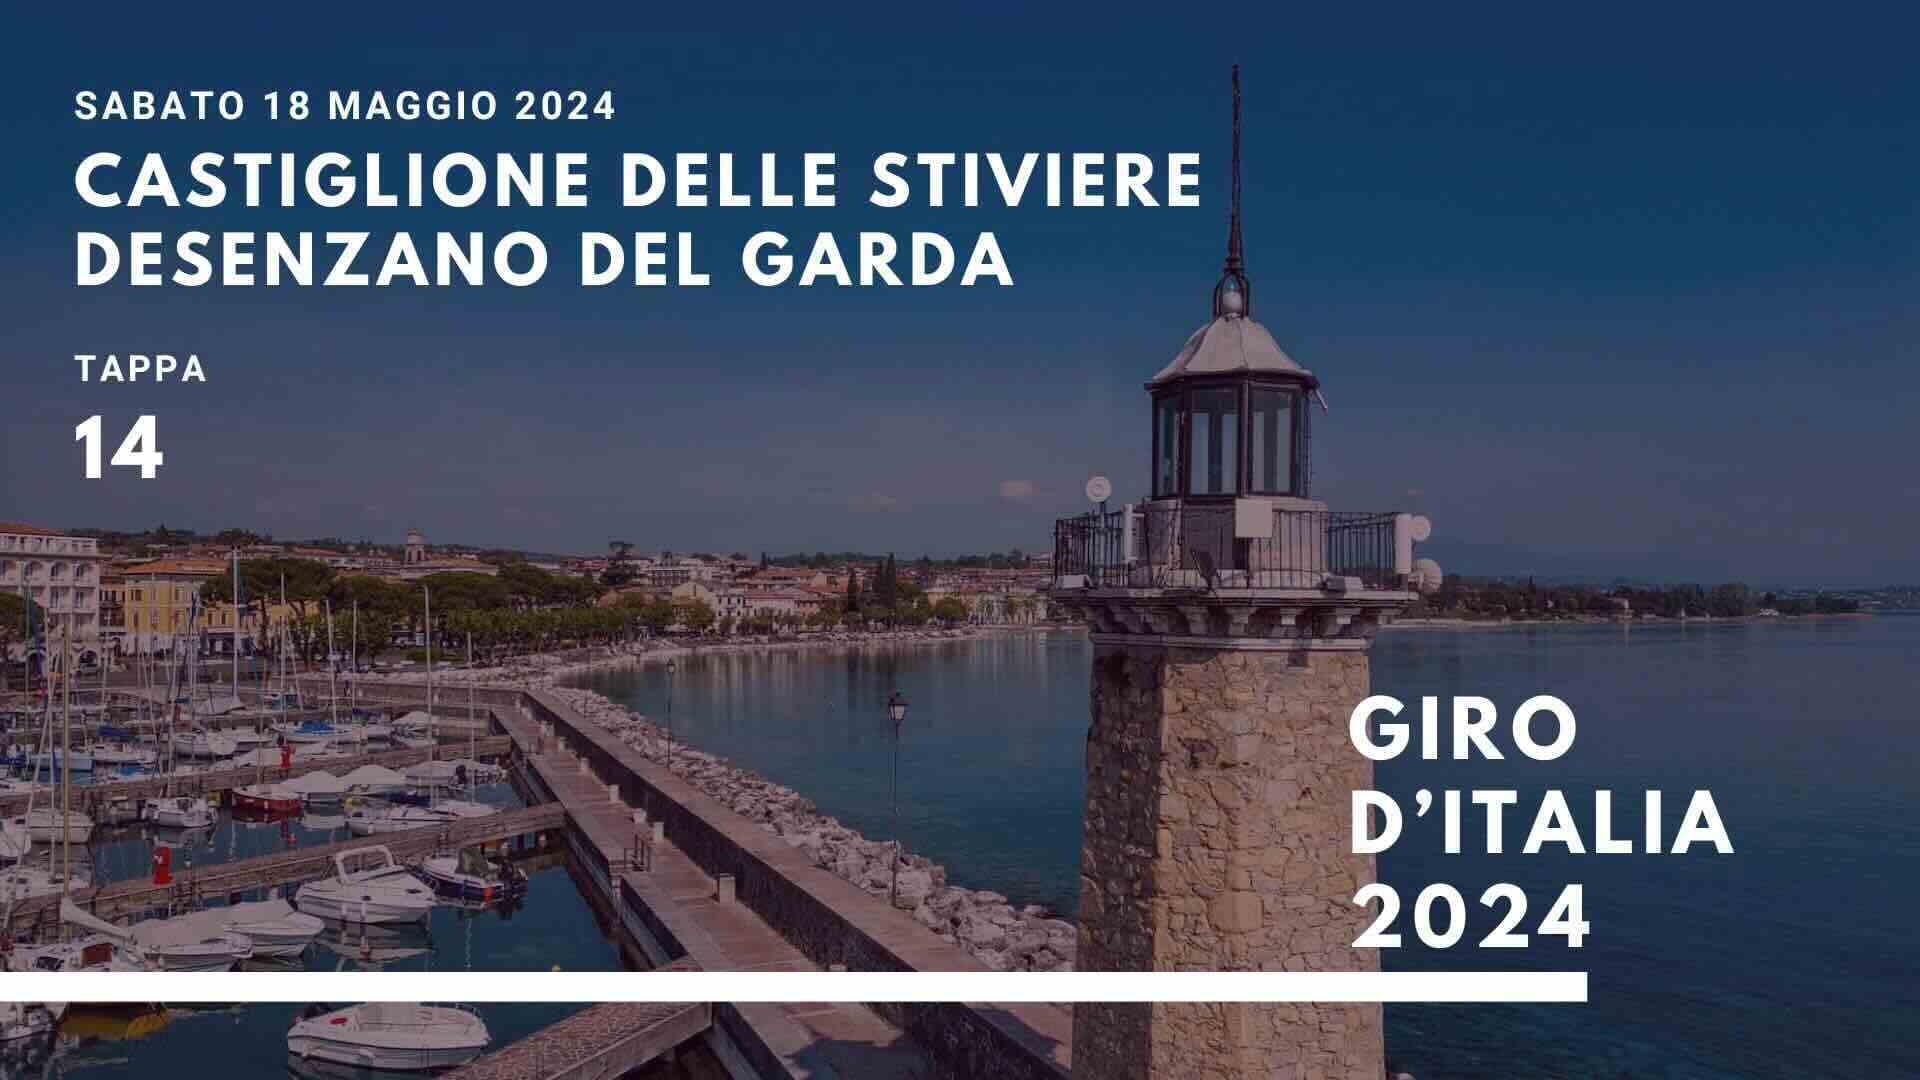 Giro d’Italia a Castiglione delle Stiviere-Desenzano del Garda strade chiuse